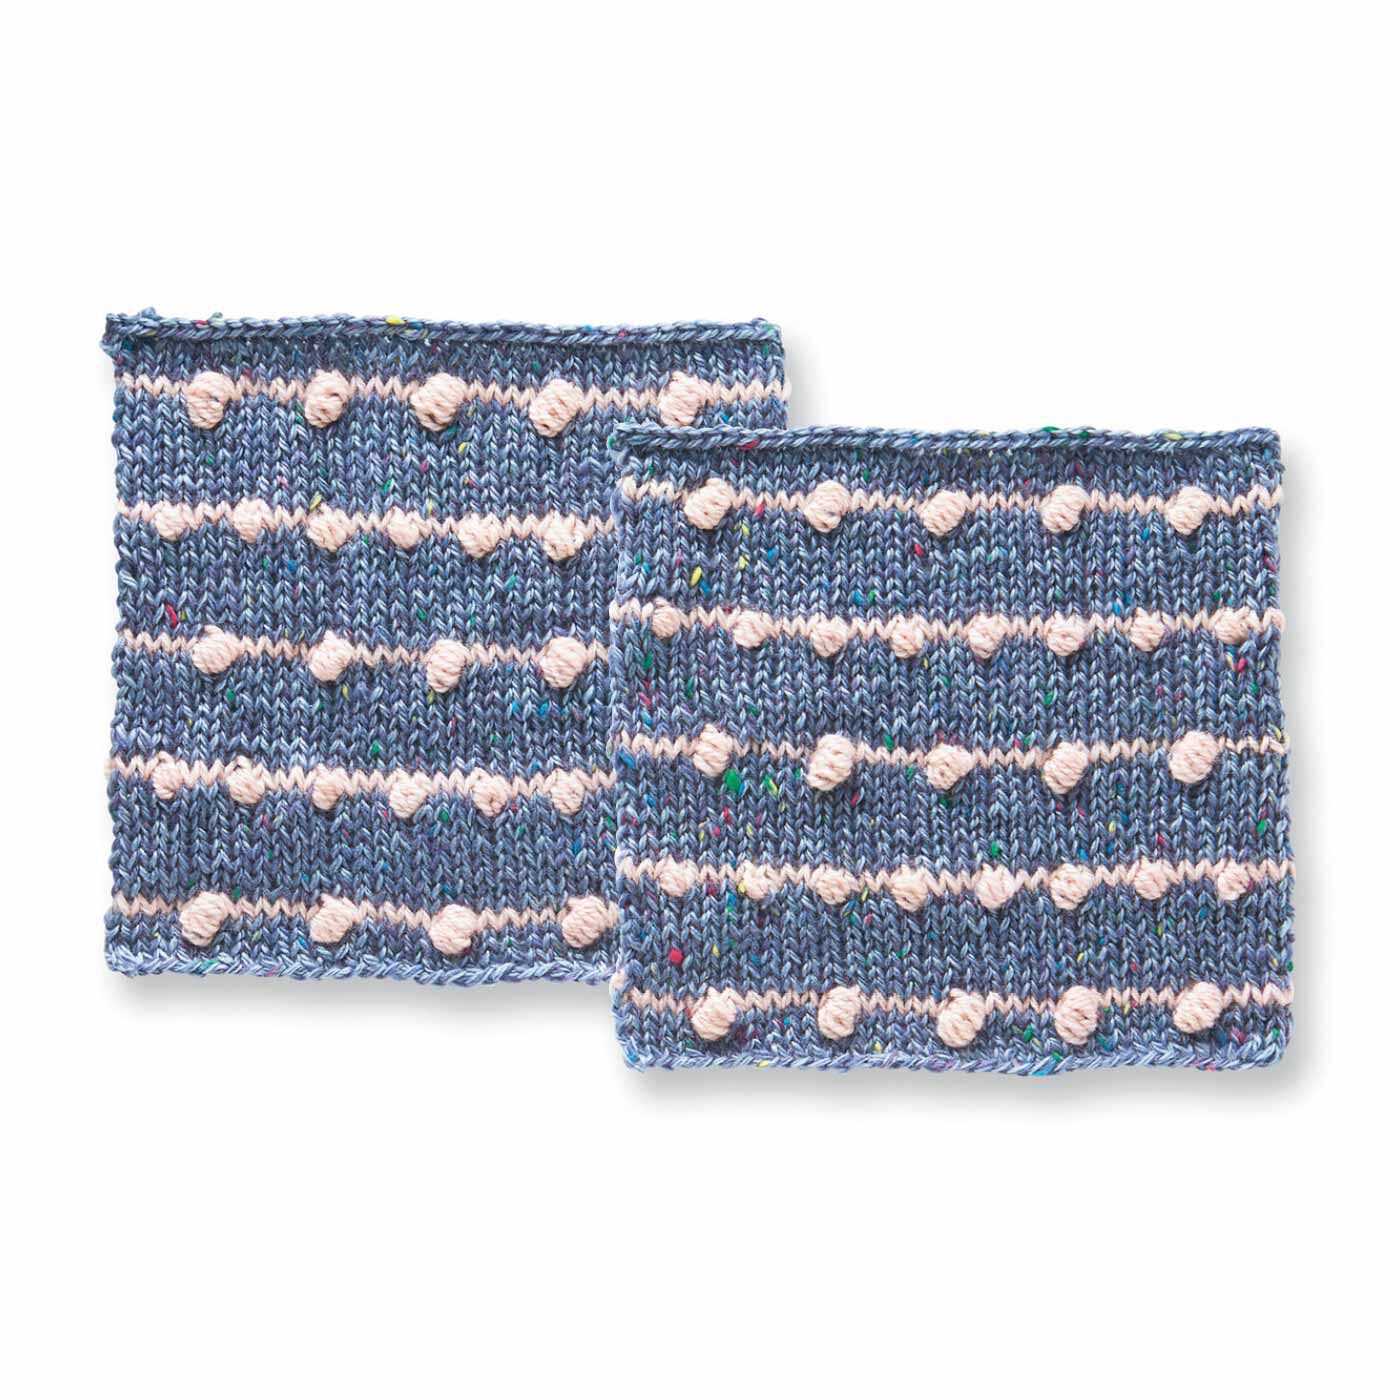 クチュリエ|棒針編みの沼にはまる ユニーク編み地のサンプラーの会|ほの甘ボッブル編みボーダー